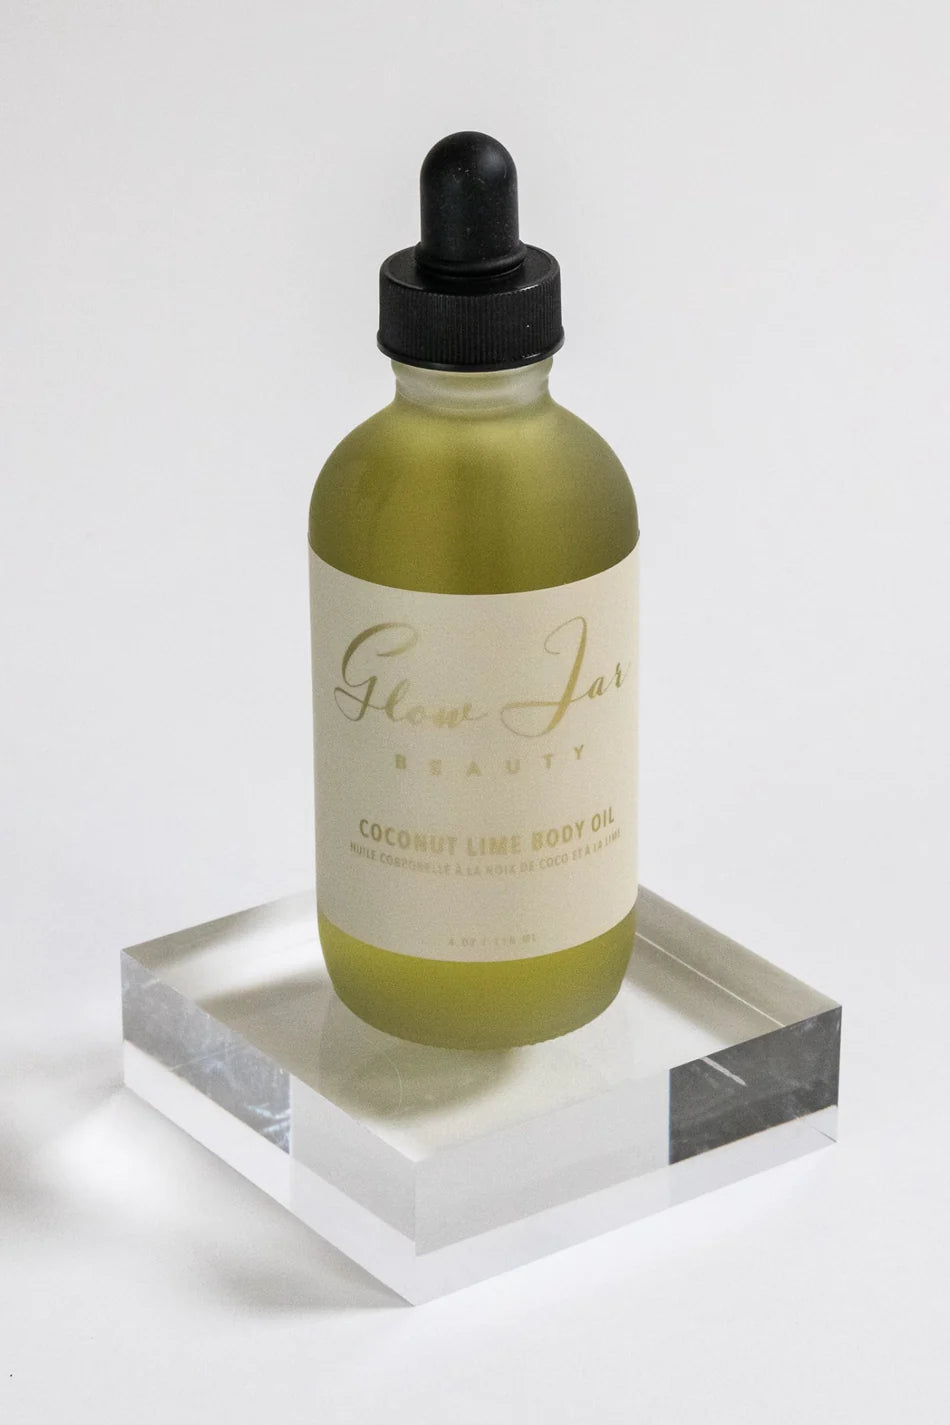 Glow Jar Beauty Coconut Lime Body Oil Detail